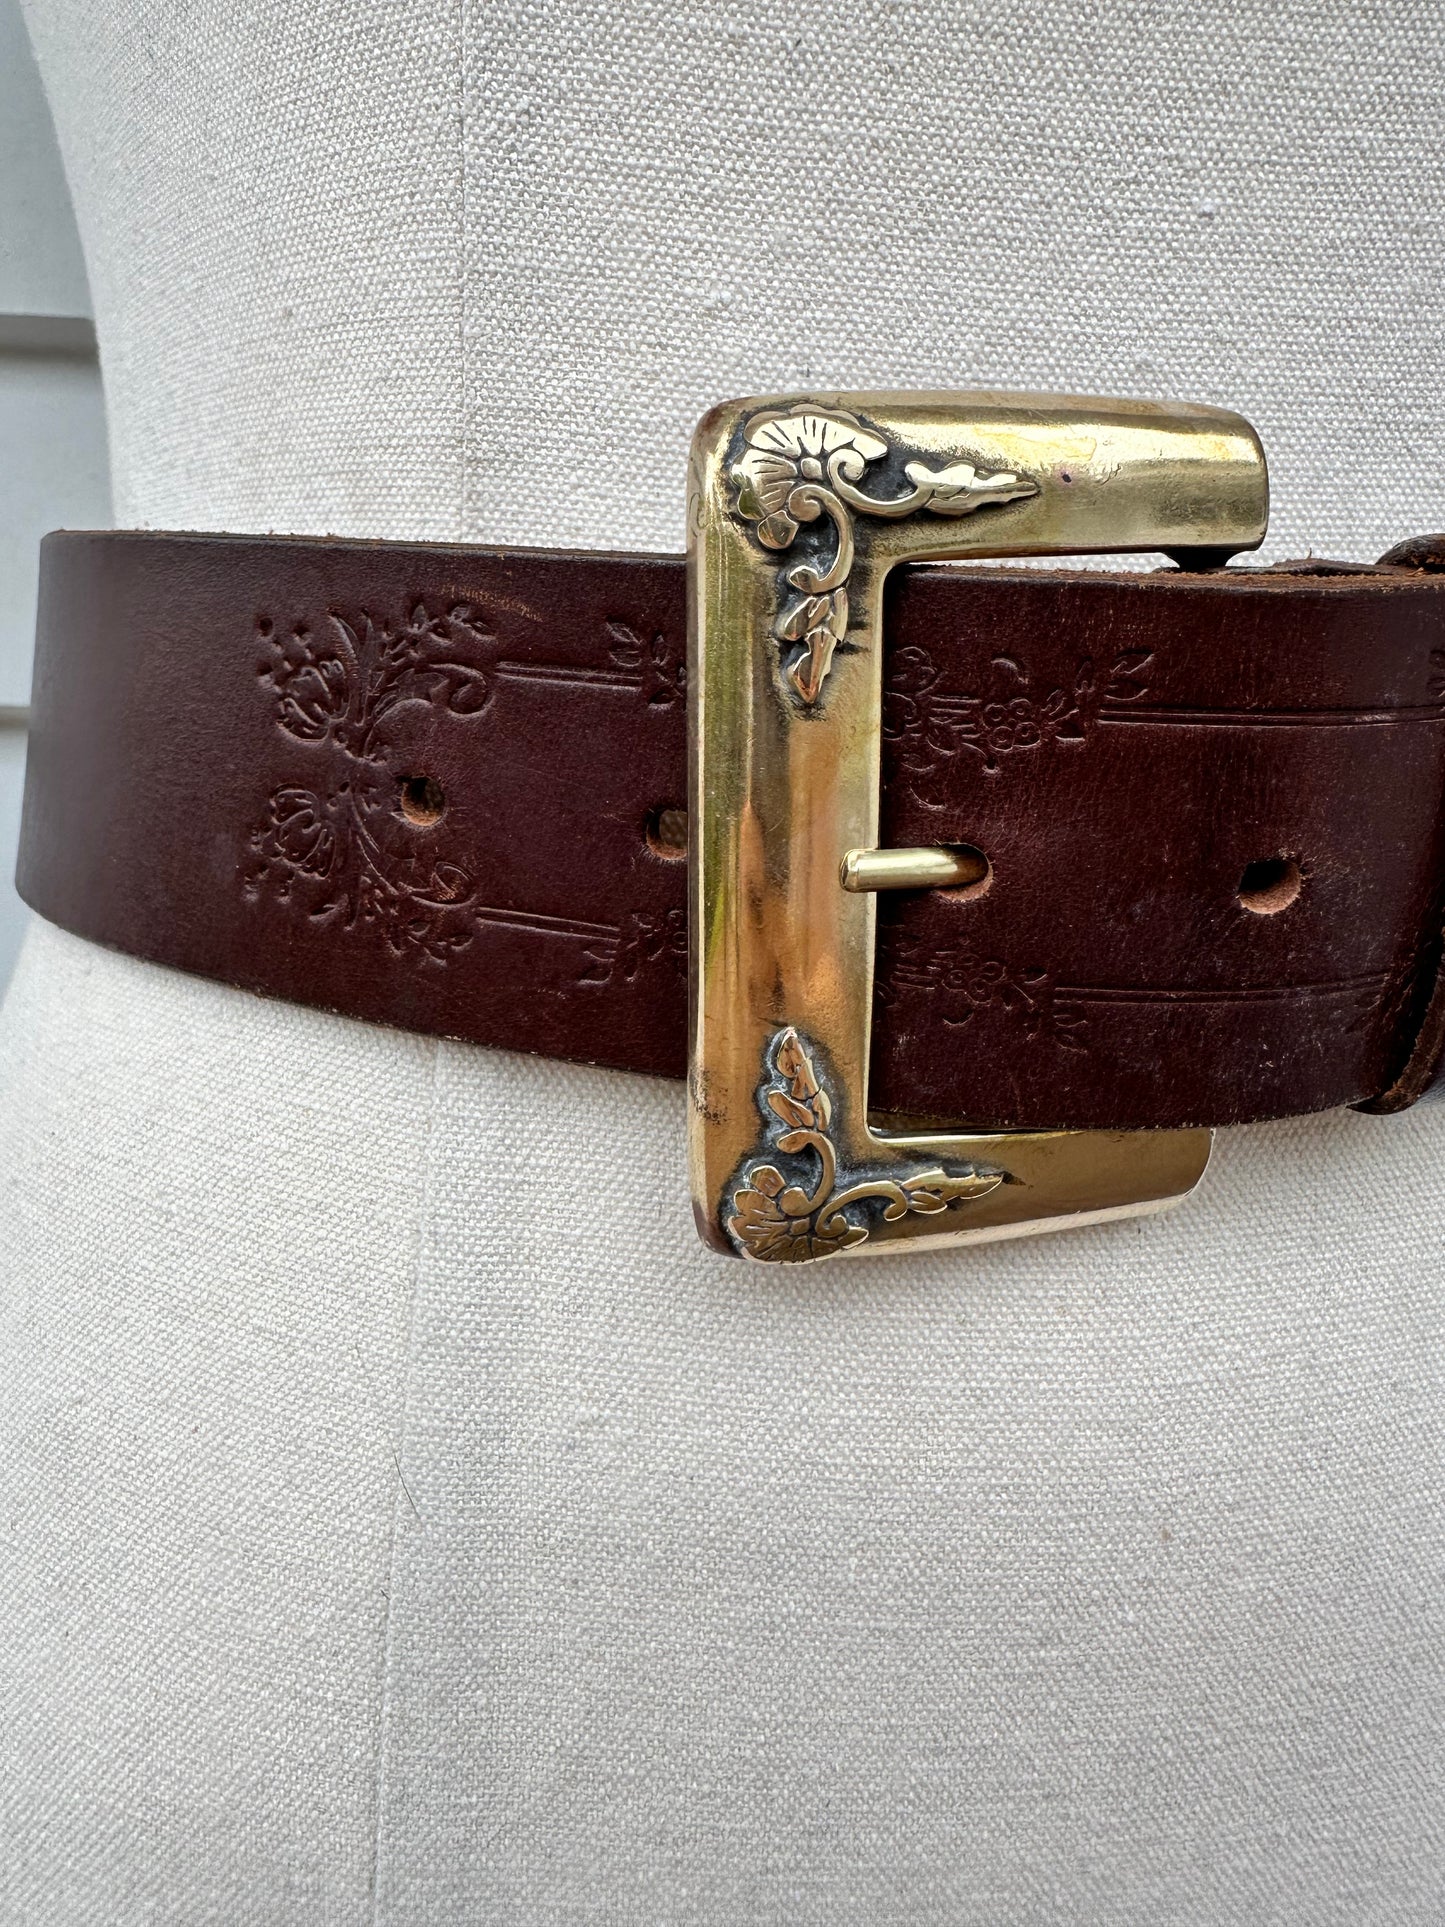 Vintage Brown Leather Belt (85cm)